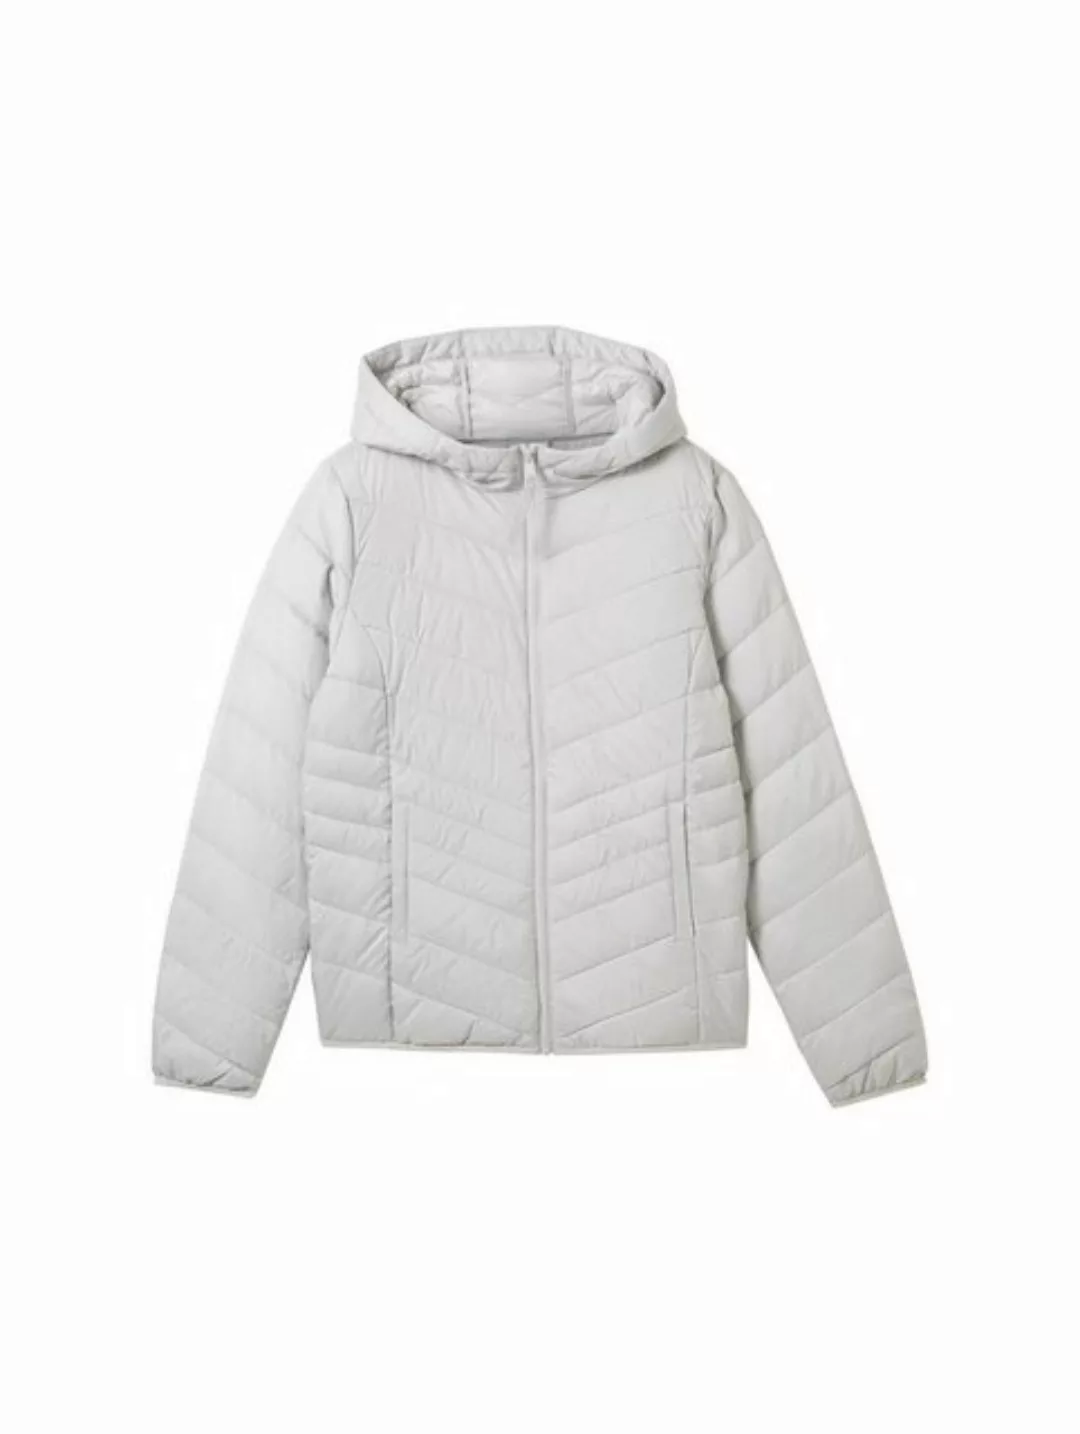 TOM TAILOR Denim Outdoorjacke light weight puffer jacket günstig online kaufen